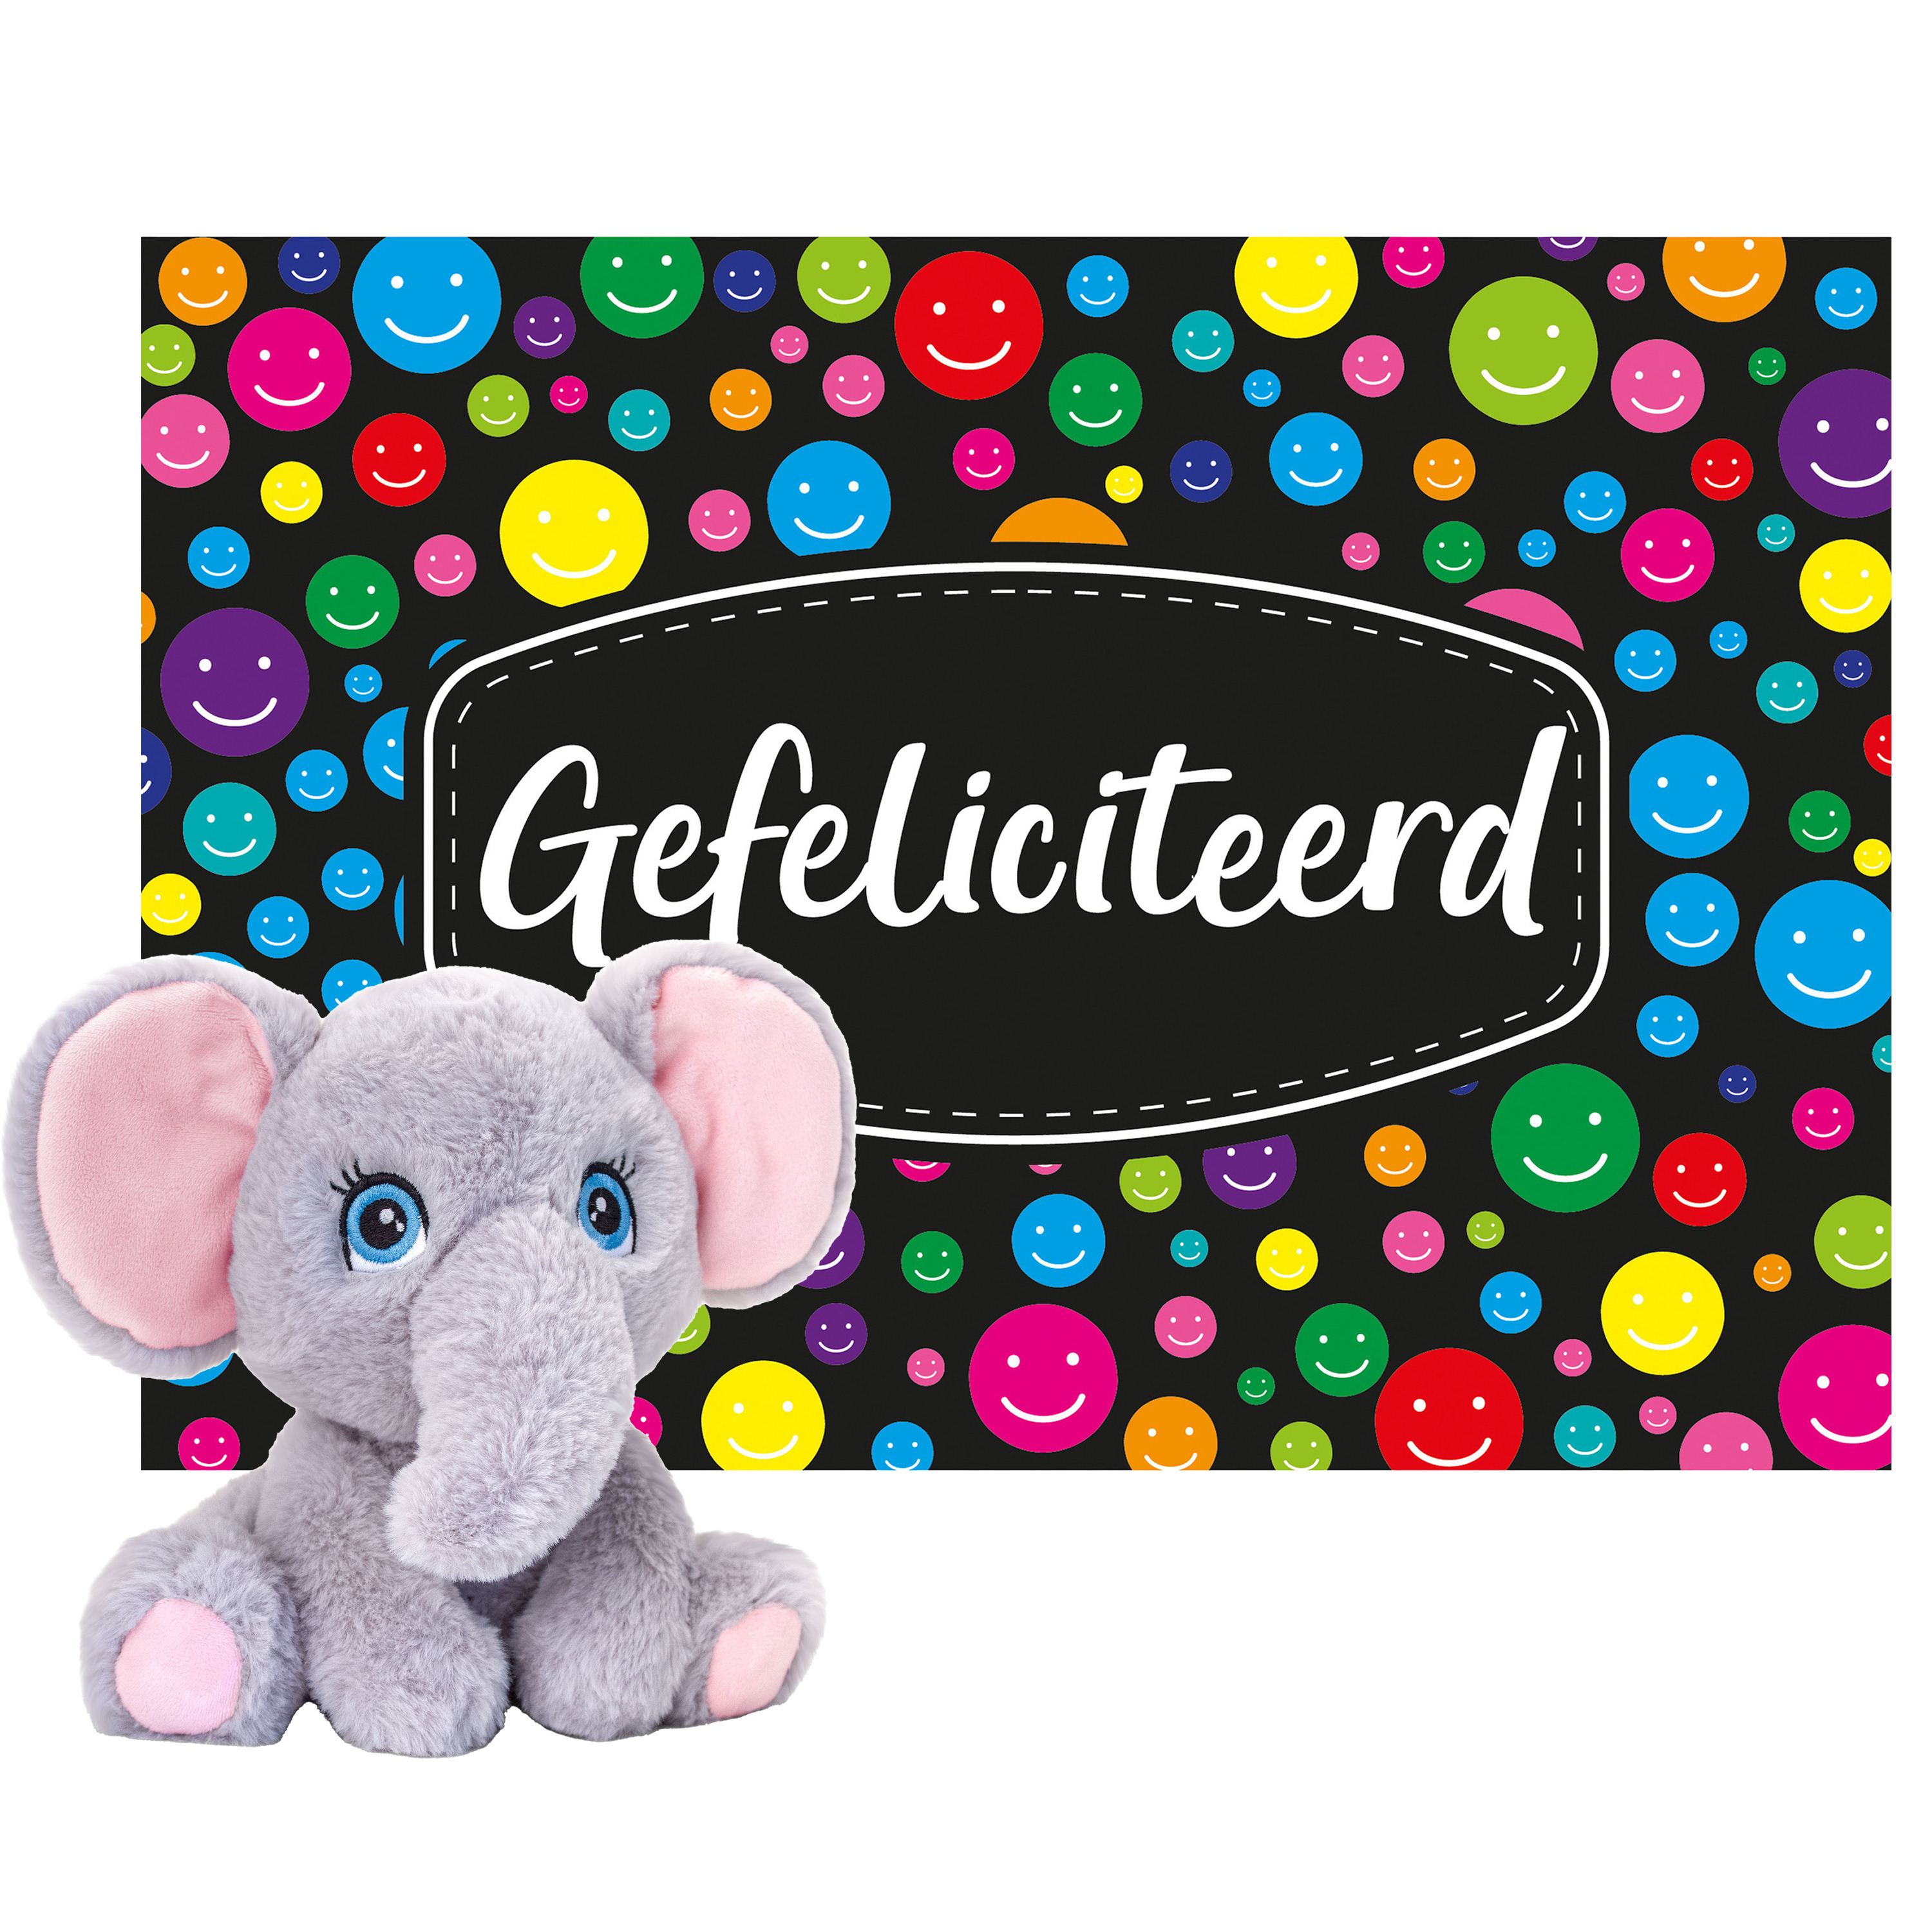 Keel toys Cadeaukaart Gefeliciteerd met knuffeldier olifant 25 cm